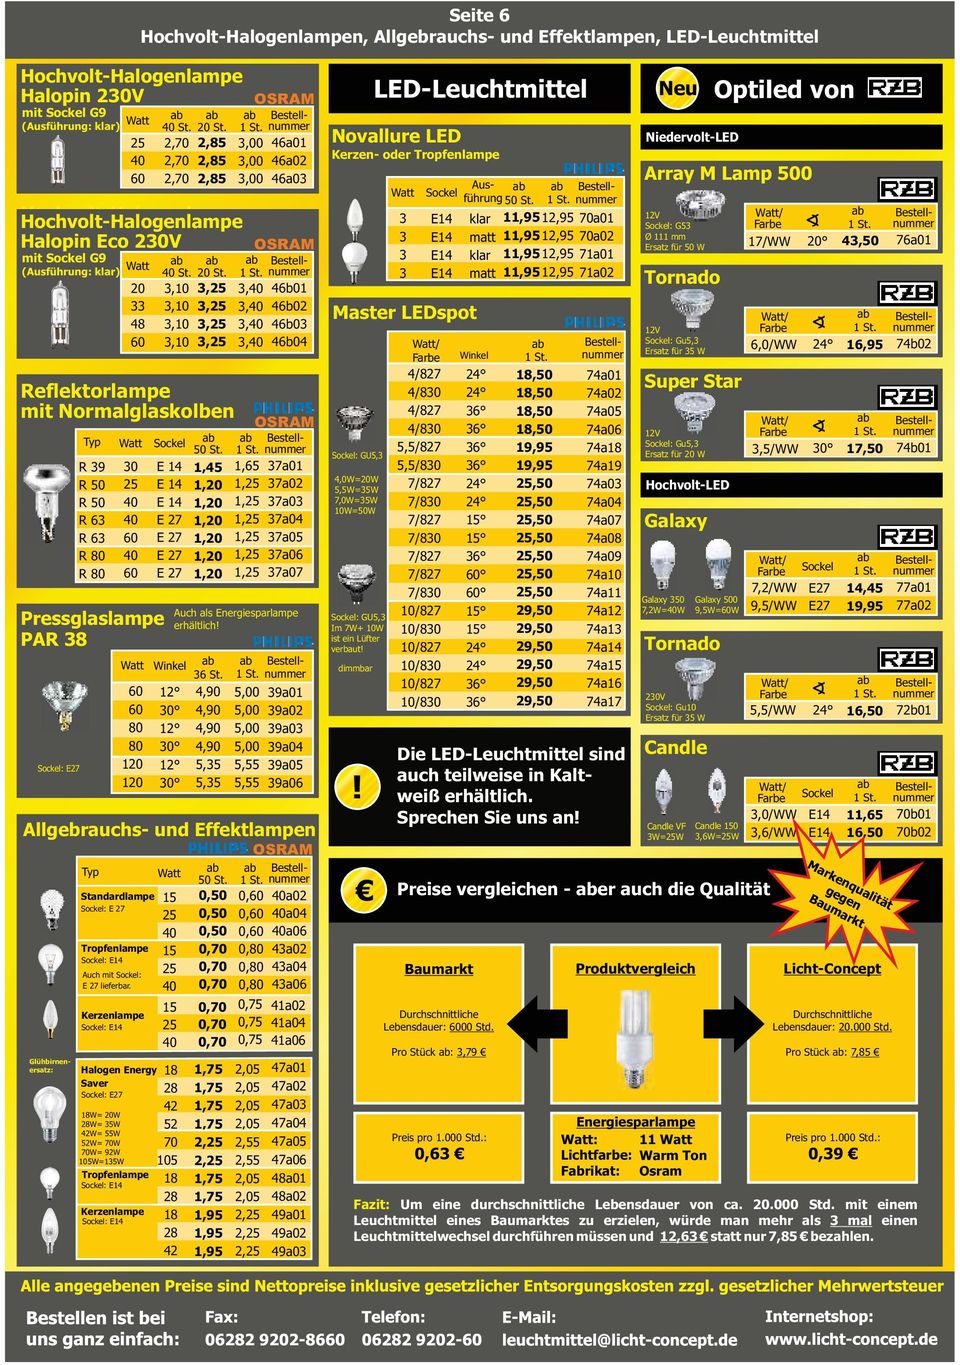 4,0 4,0 4,0 4,0,,,00,00,00,00,, 3a01 3a02 3a03 3a04 3a0 3a06 Allgebrauchs- und Effektlampen Typ Standardlampe Tropfenlampe E Auch mit lieferbar.